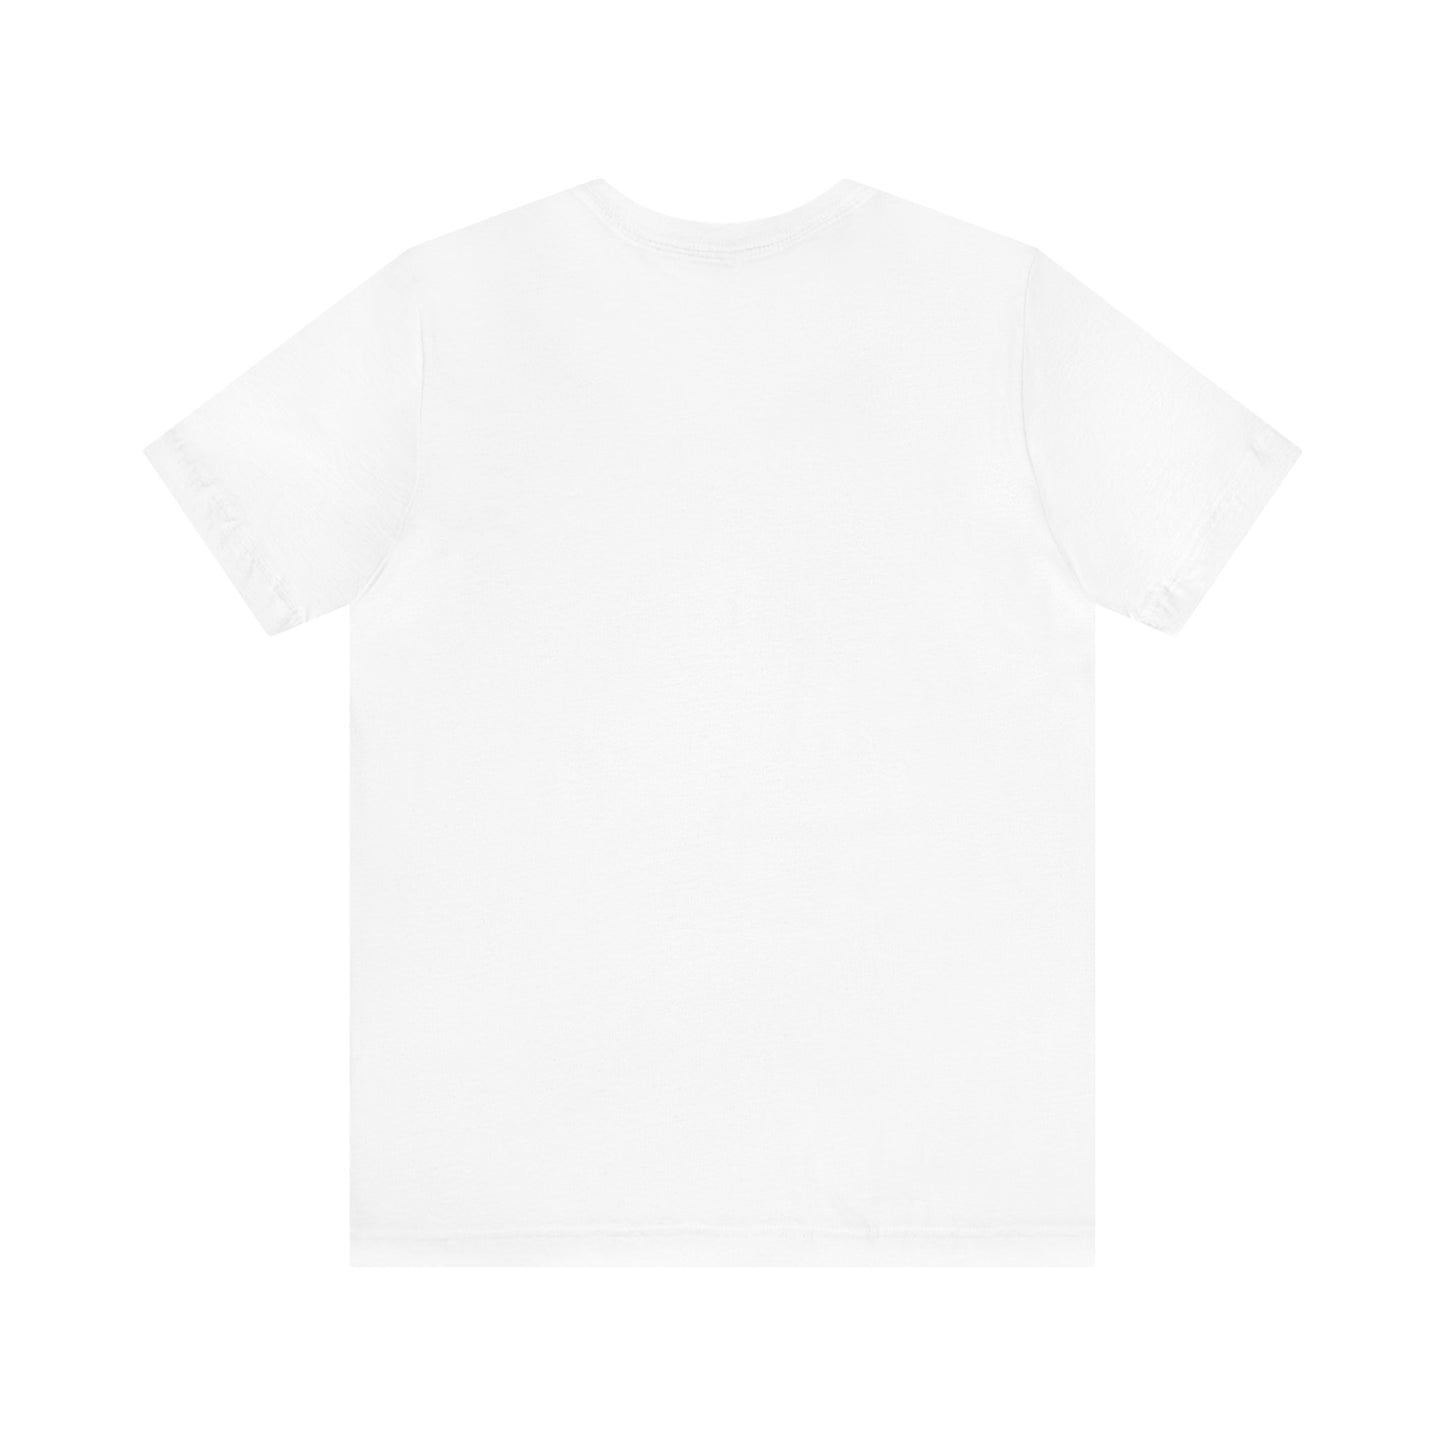 Unisex T-shirt Arctic Monkeys